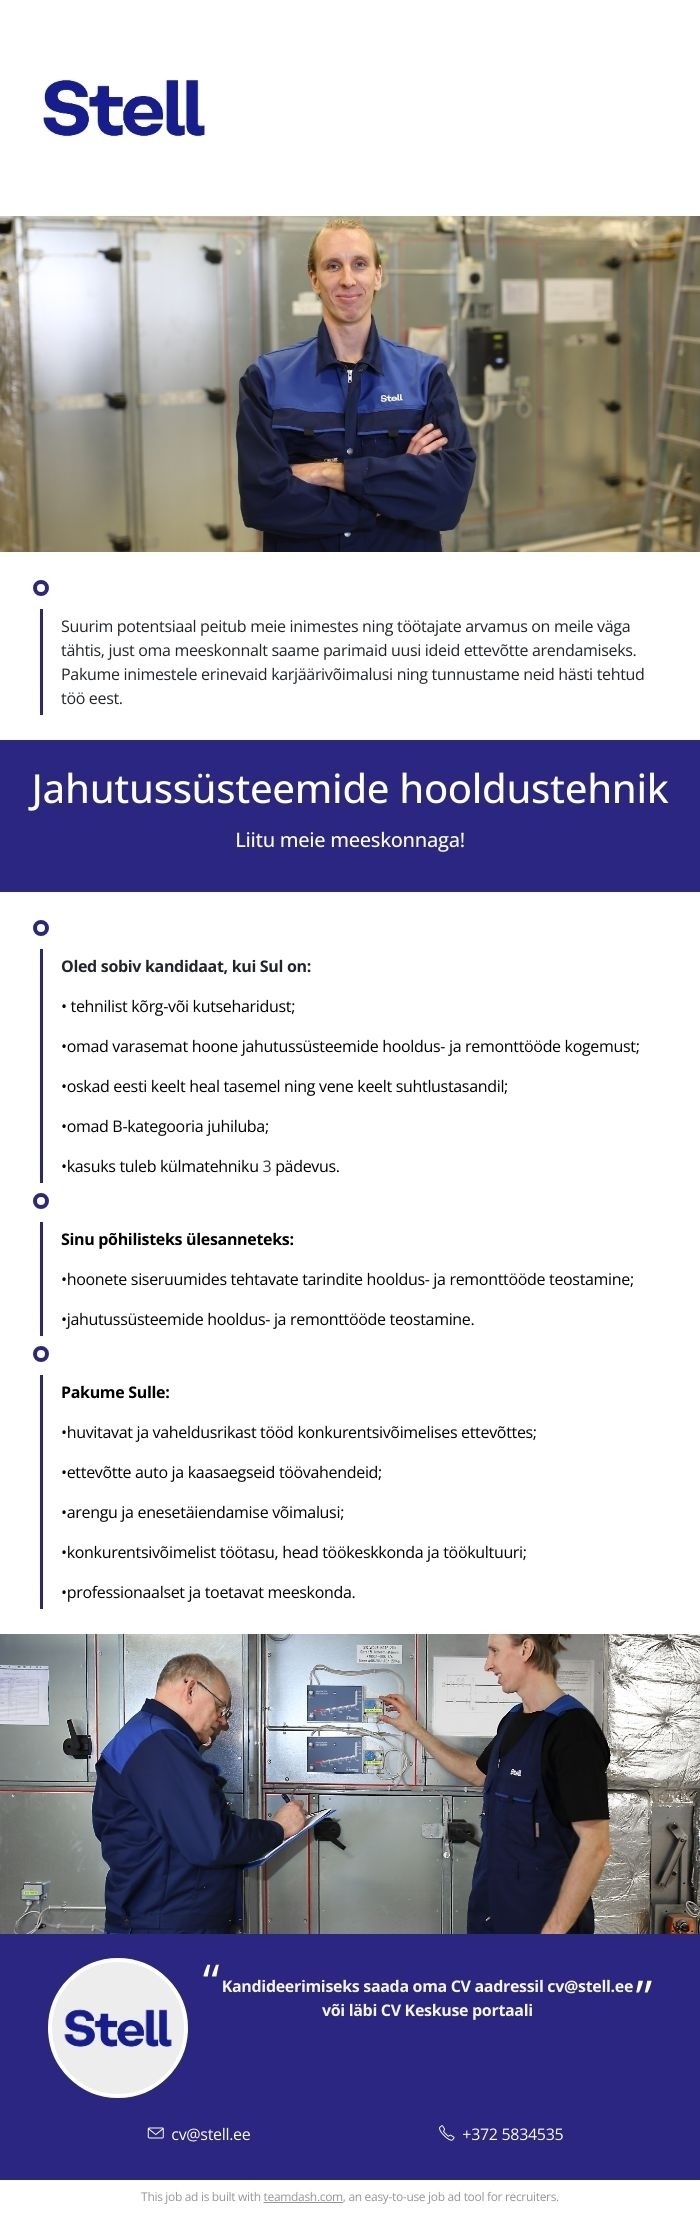 Stell Eesti AS Jahutussüsteemide hooldustehnik